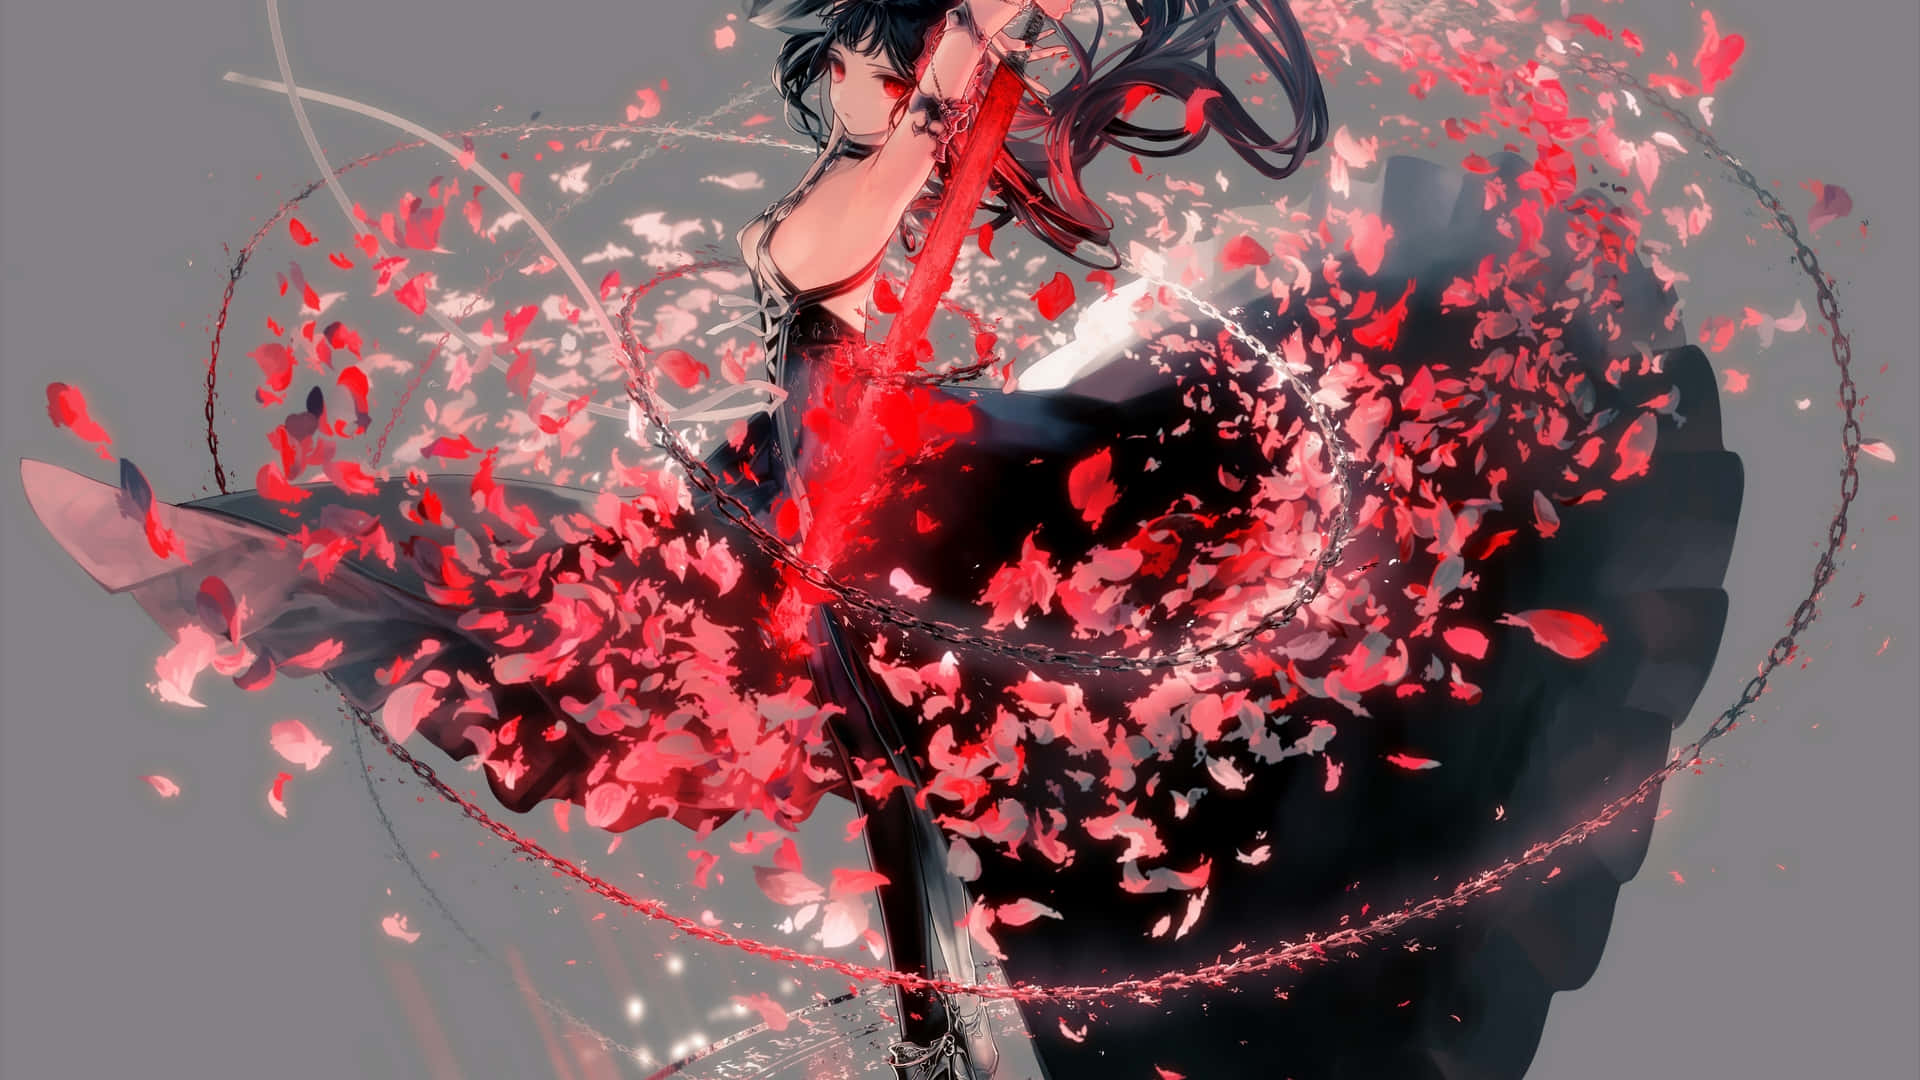 Einmädchen In Einem Schwarzen Und Roten Kleid Tanzt Mit Roten Blütenblättern. Wallpaper